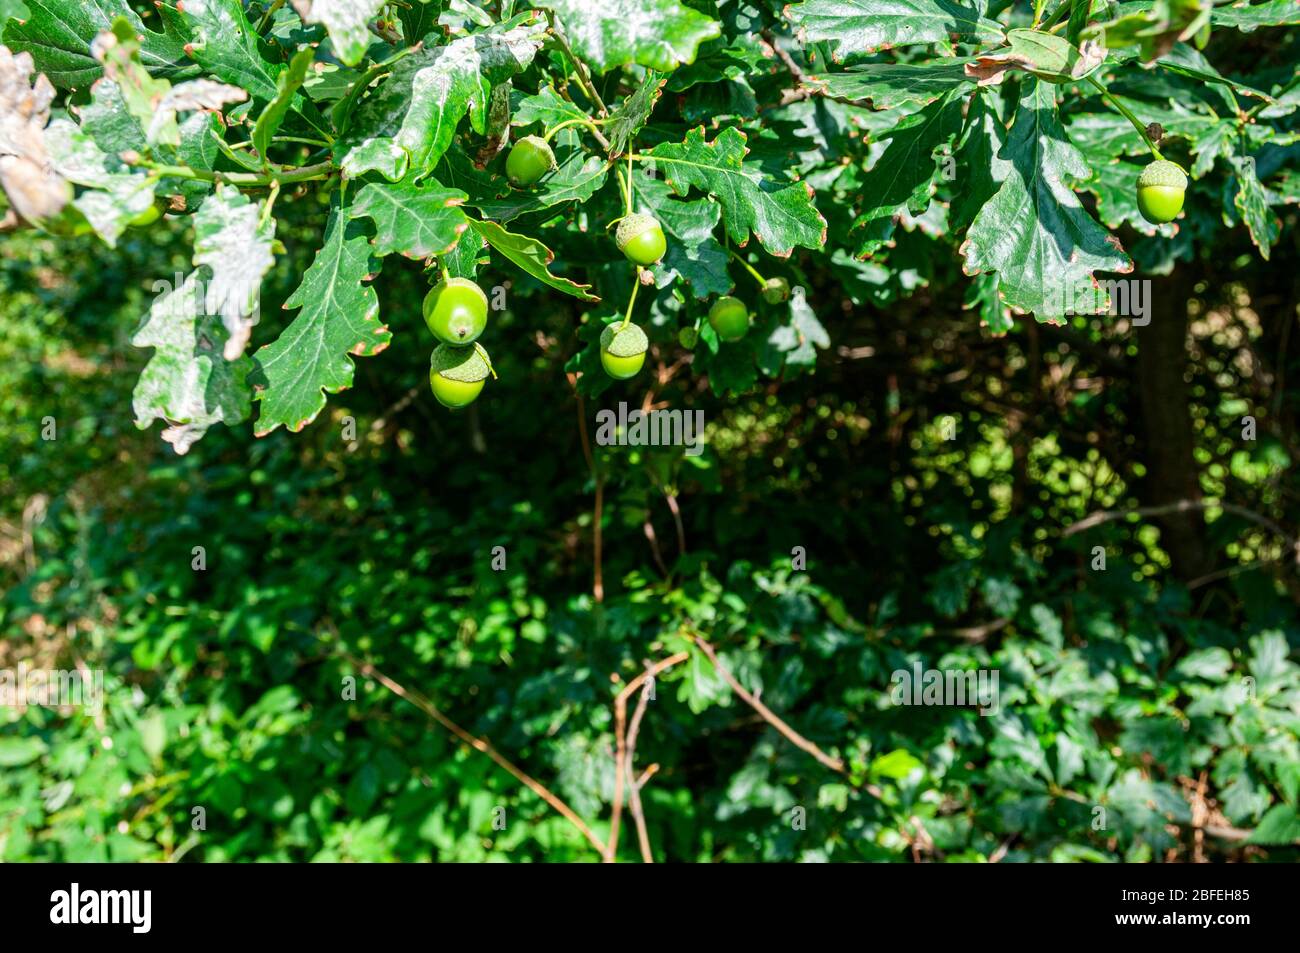 Il frutto della quercia, ghiande, sopportato in cupole a tazza, tra i grappoli di foglie verdi disposte a spirale con margini lobati profondamente arrotondati Foto Stock